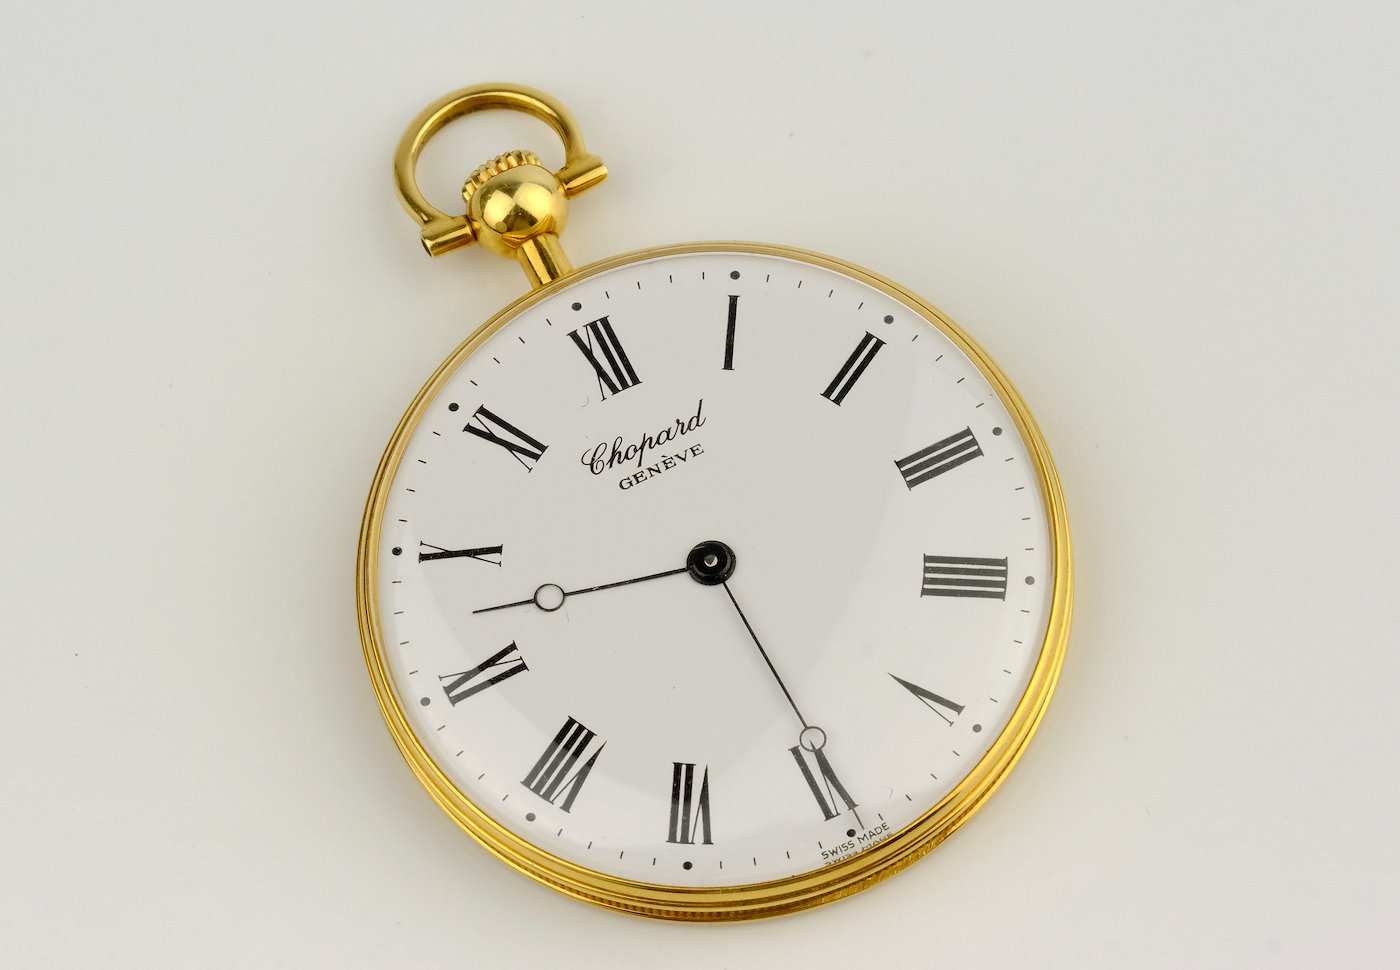 Chopard Genéve - Jednoplášťové kapesní hodinky, zlato 750/1000, hrubá hmotnost 46,25 g